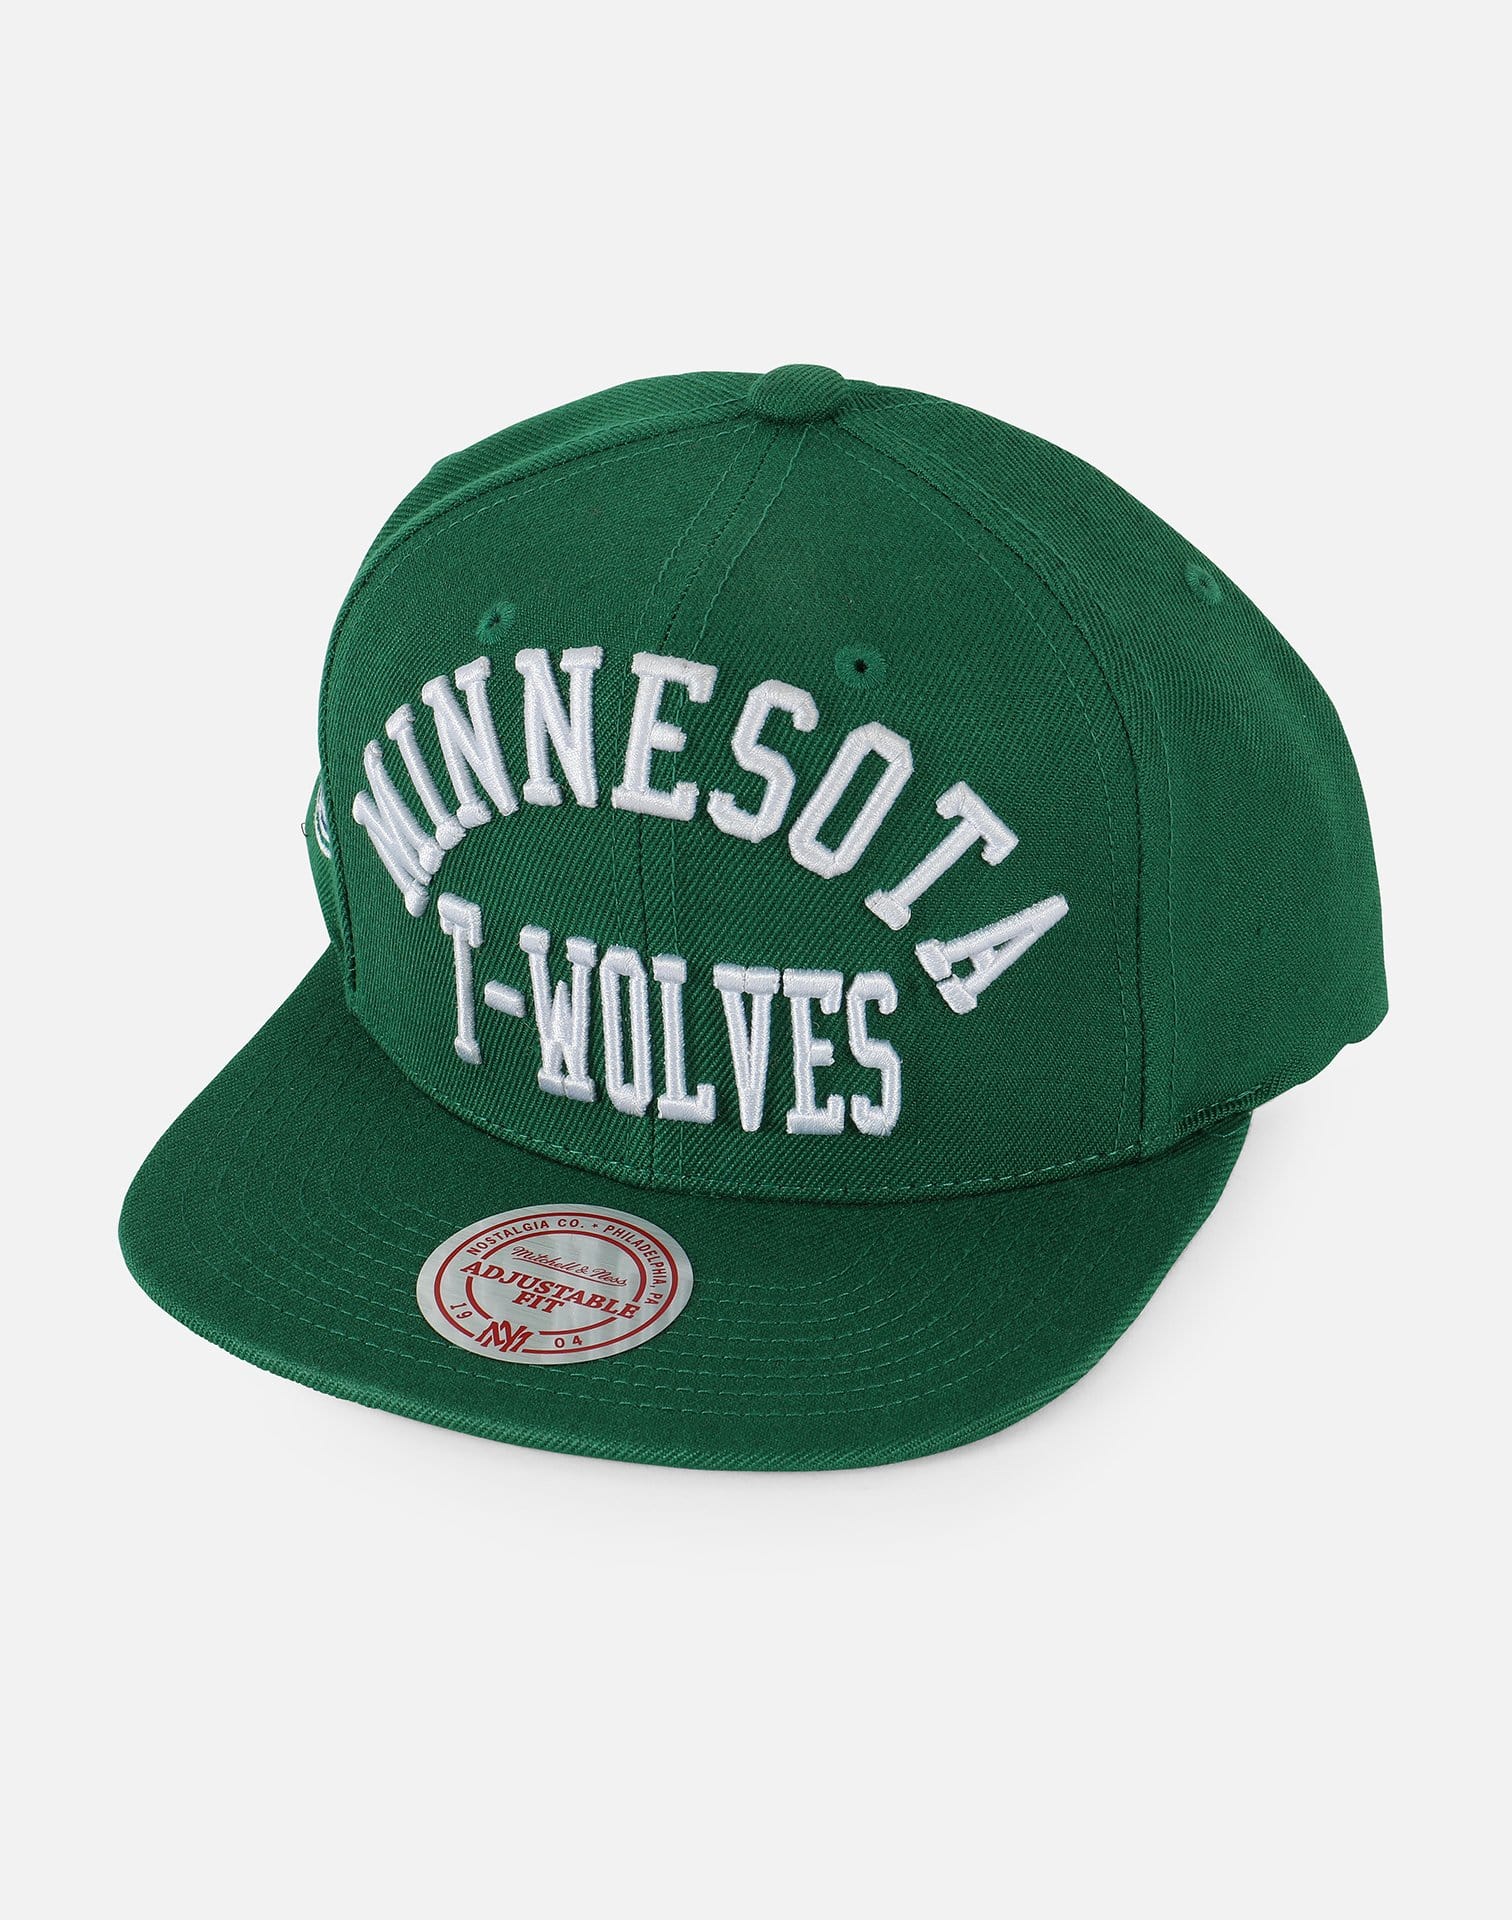 Mitchell and Ness Minnesota Timberwolves Snapback Hat